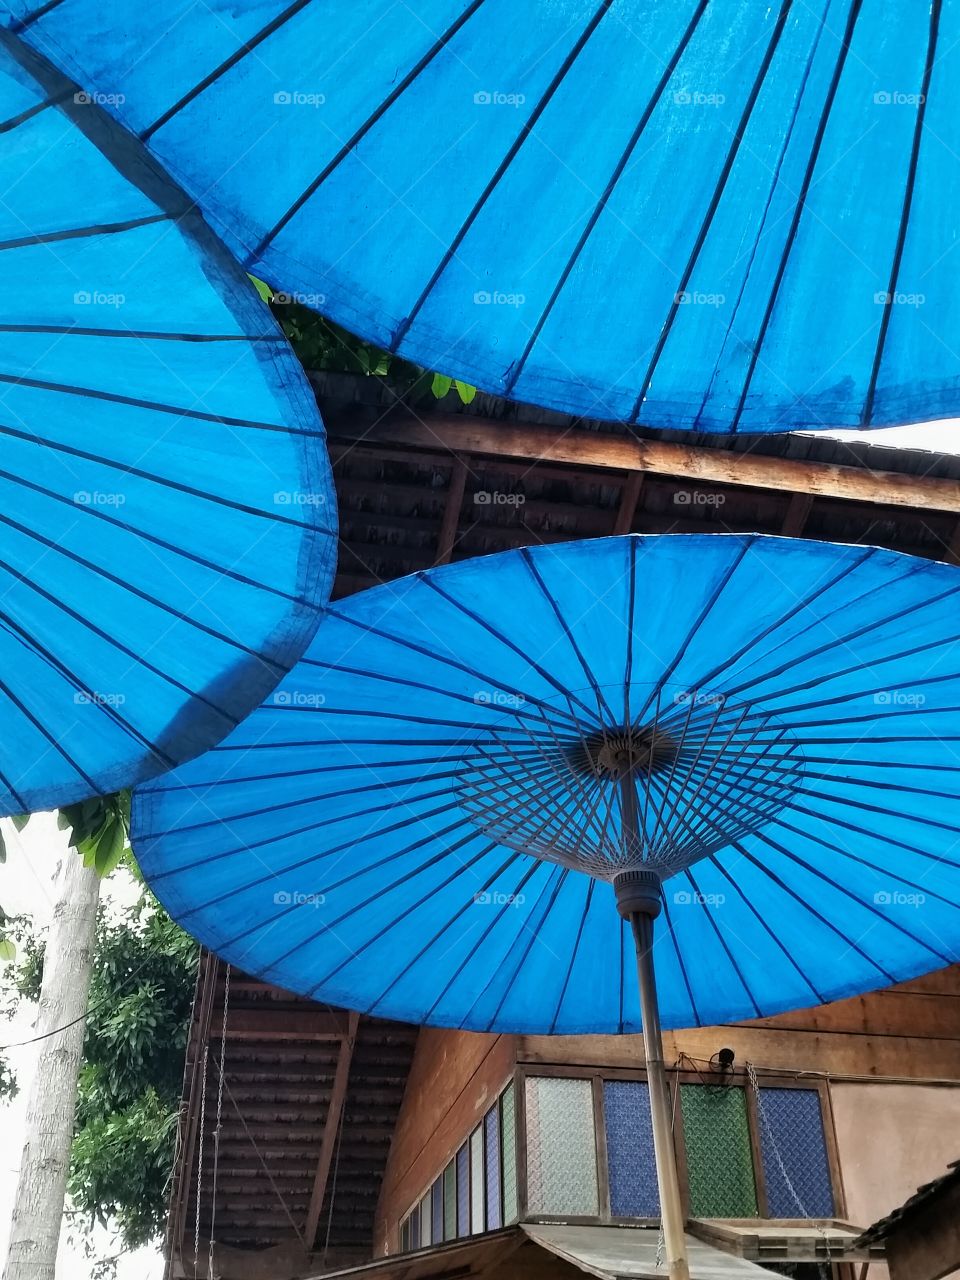 Blue umbrellas